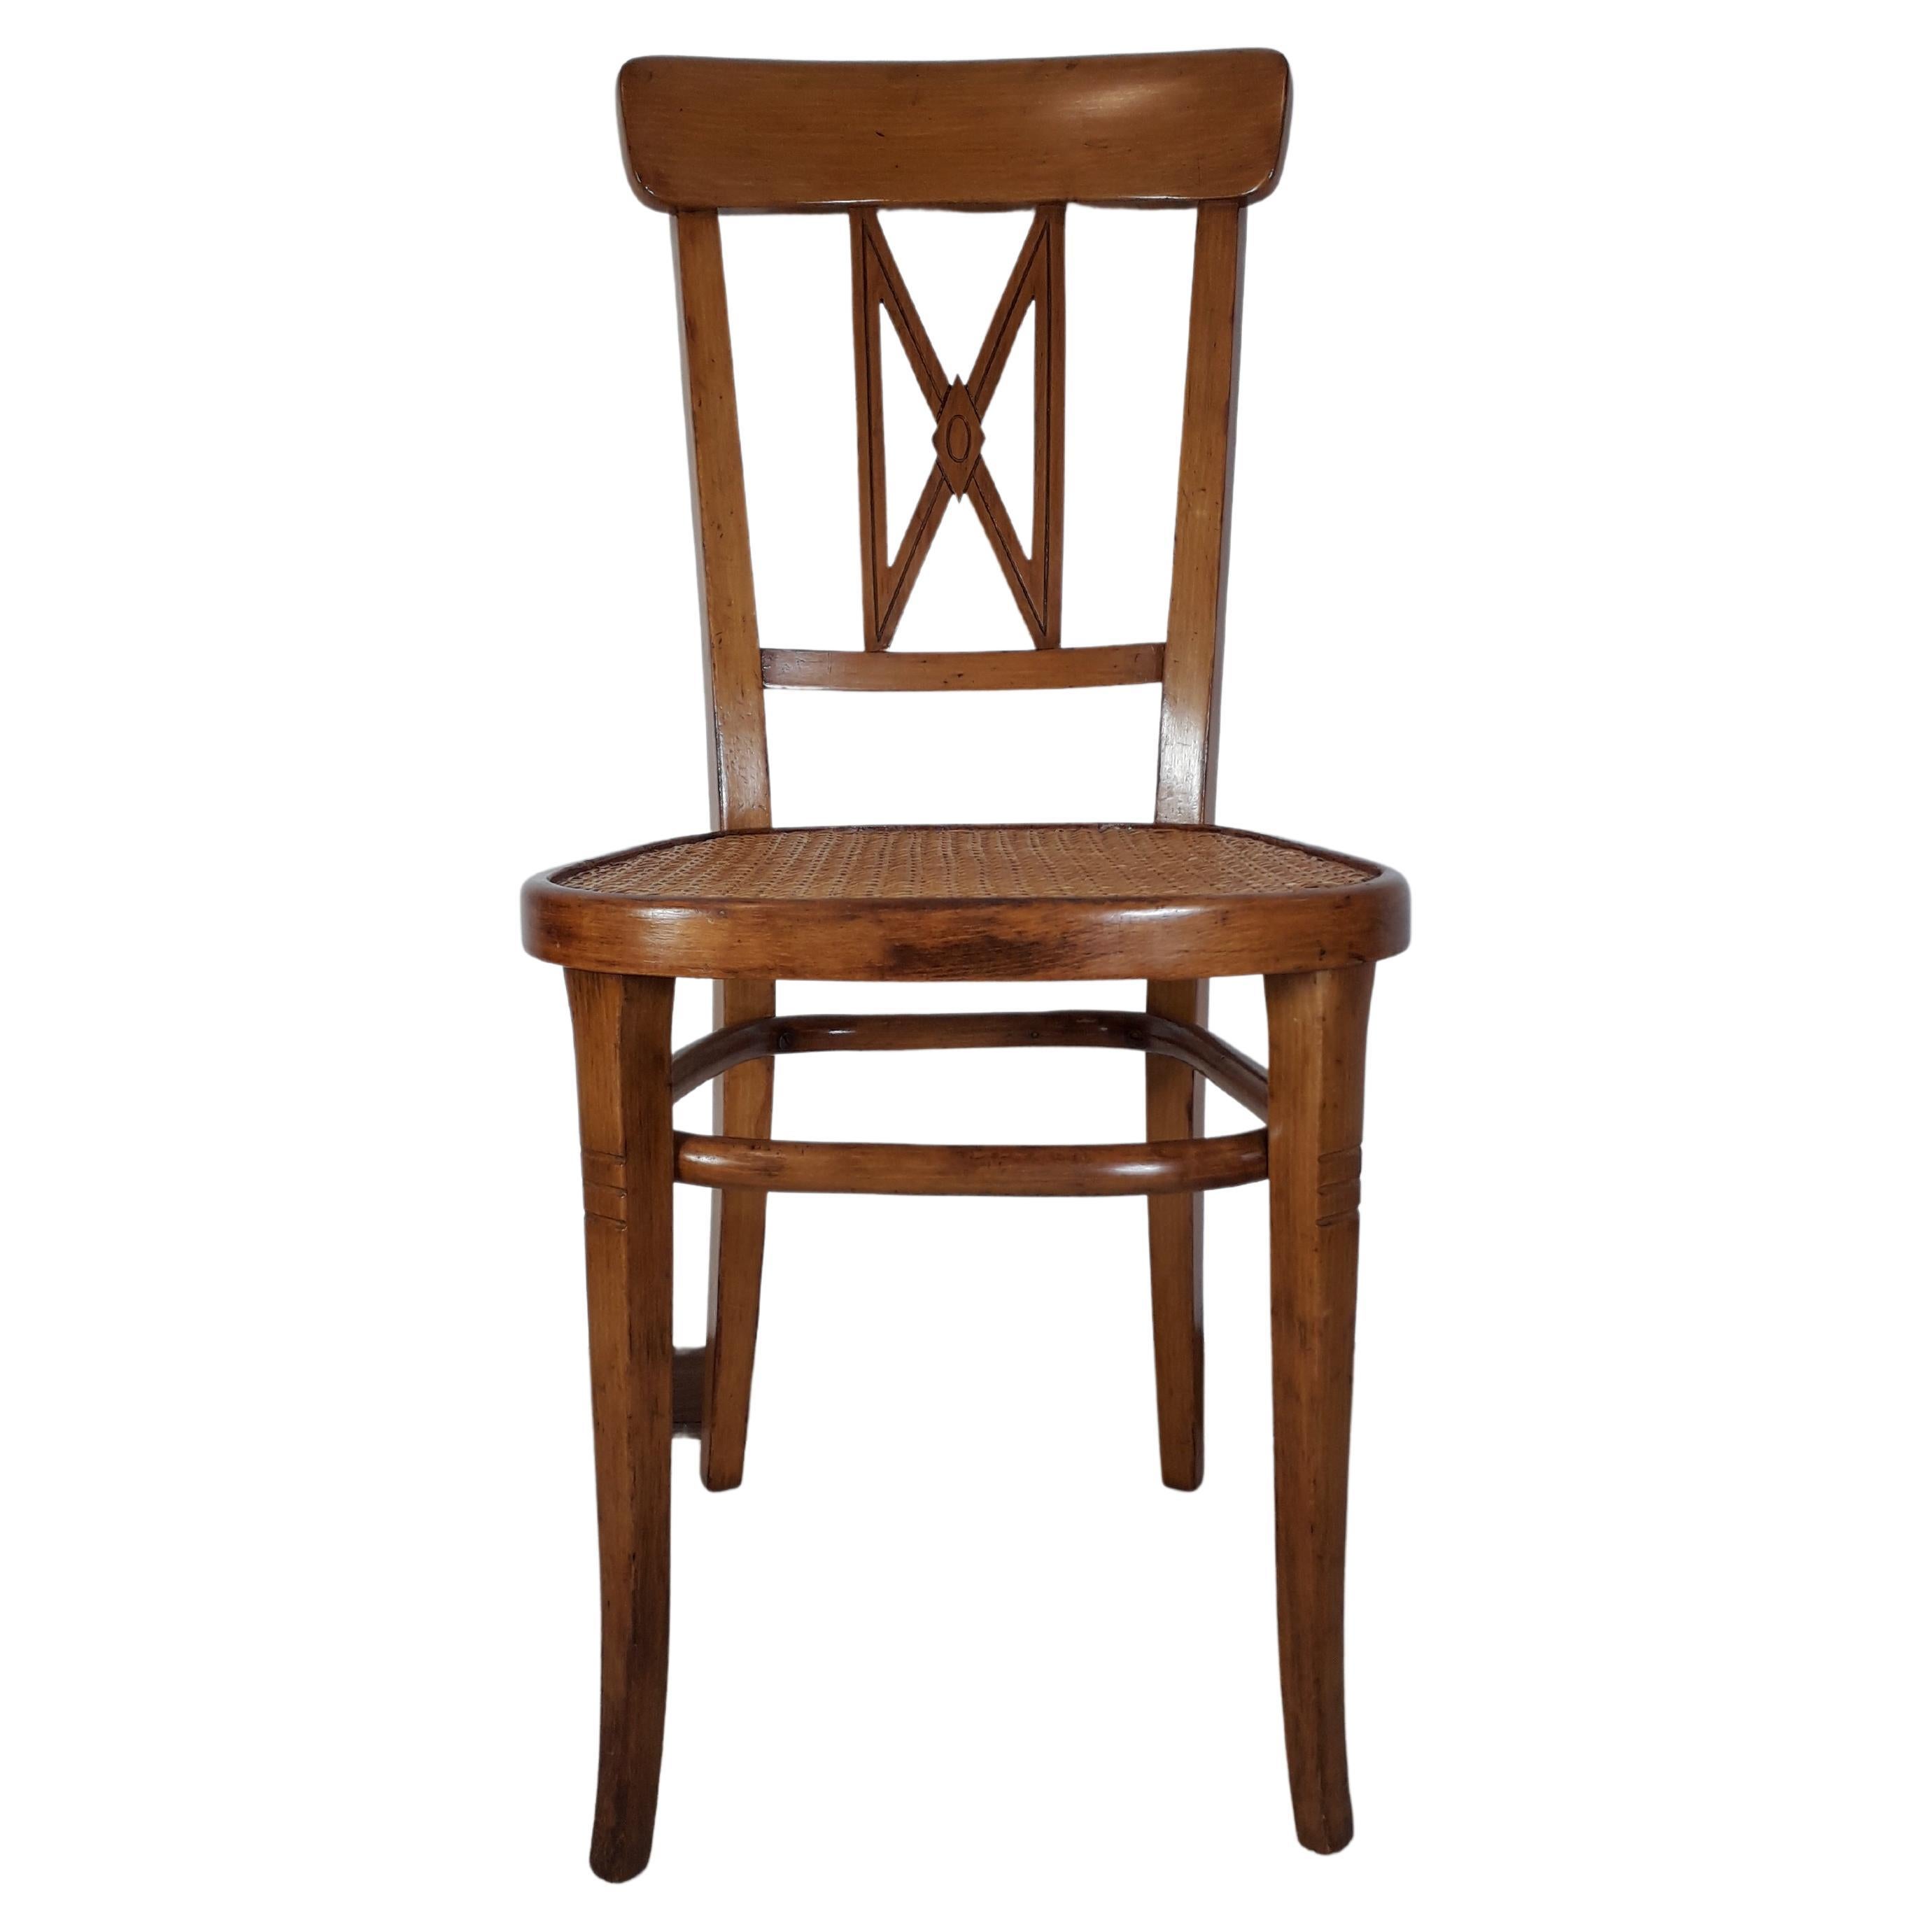 Rara silla de la Wiener Werkstaette considerada el prototipo de las sucesivas variantes sobre Diseño del arquitecto. Gustav Sigel. Son características las secciones rectangulares y los motivos geométricos del respaldo.
Este modelo es de haya rubia